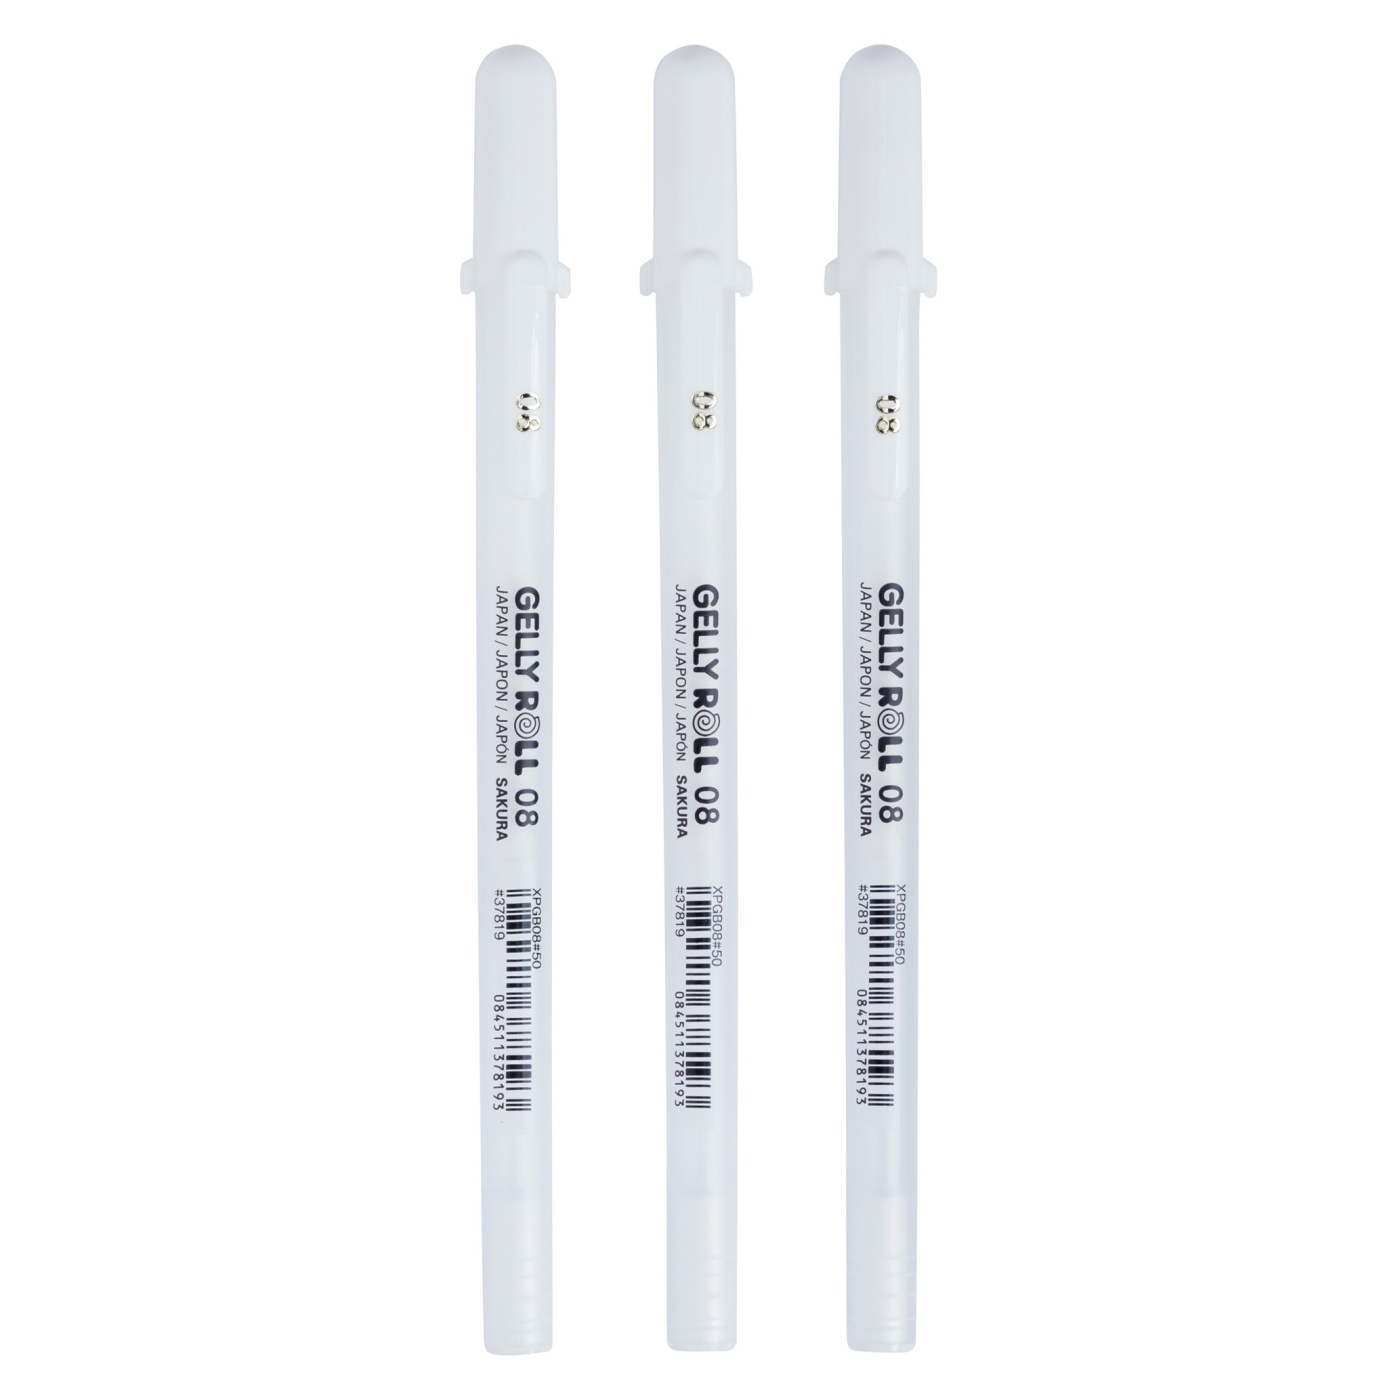 Gelly Roll Basic White 3-pack Medium i gruppen Penne / Skrive / Gelpenne hos Pen Store (103536)